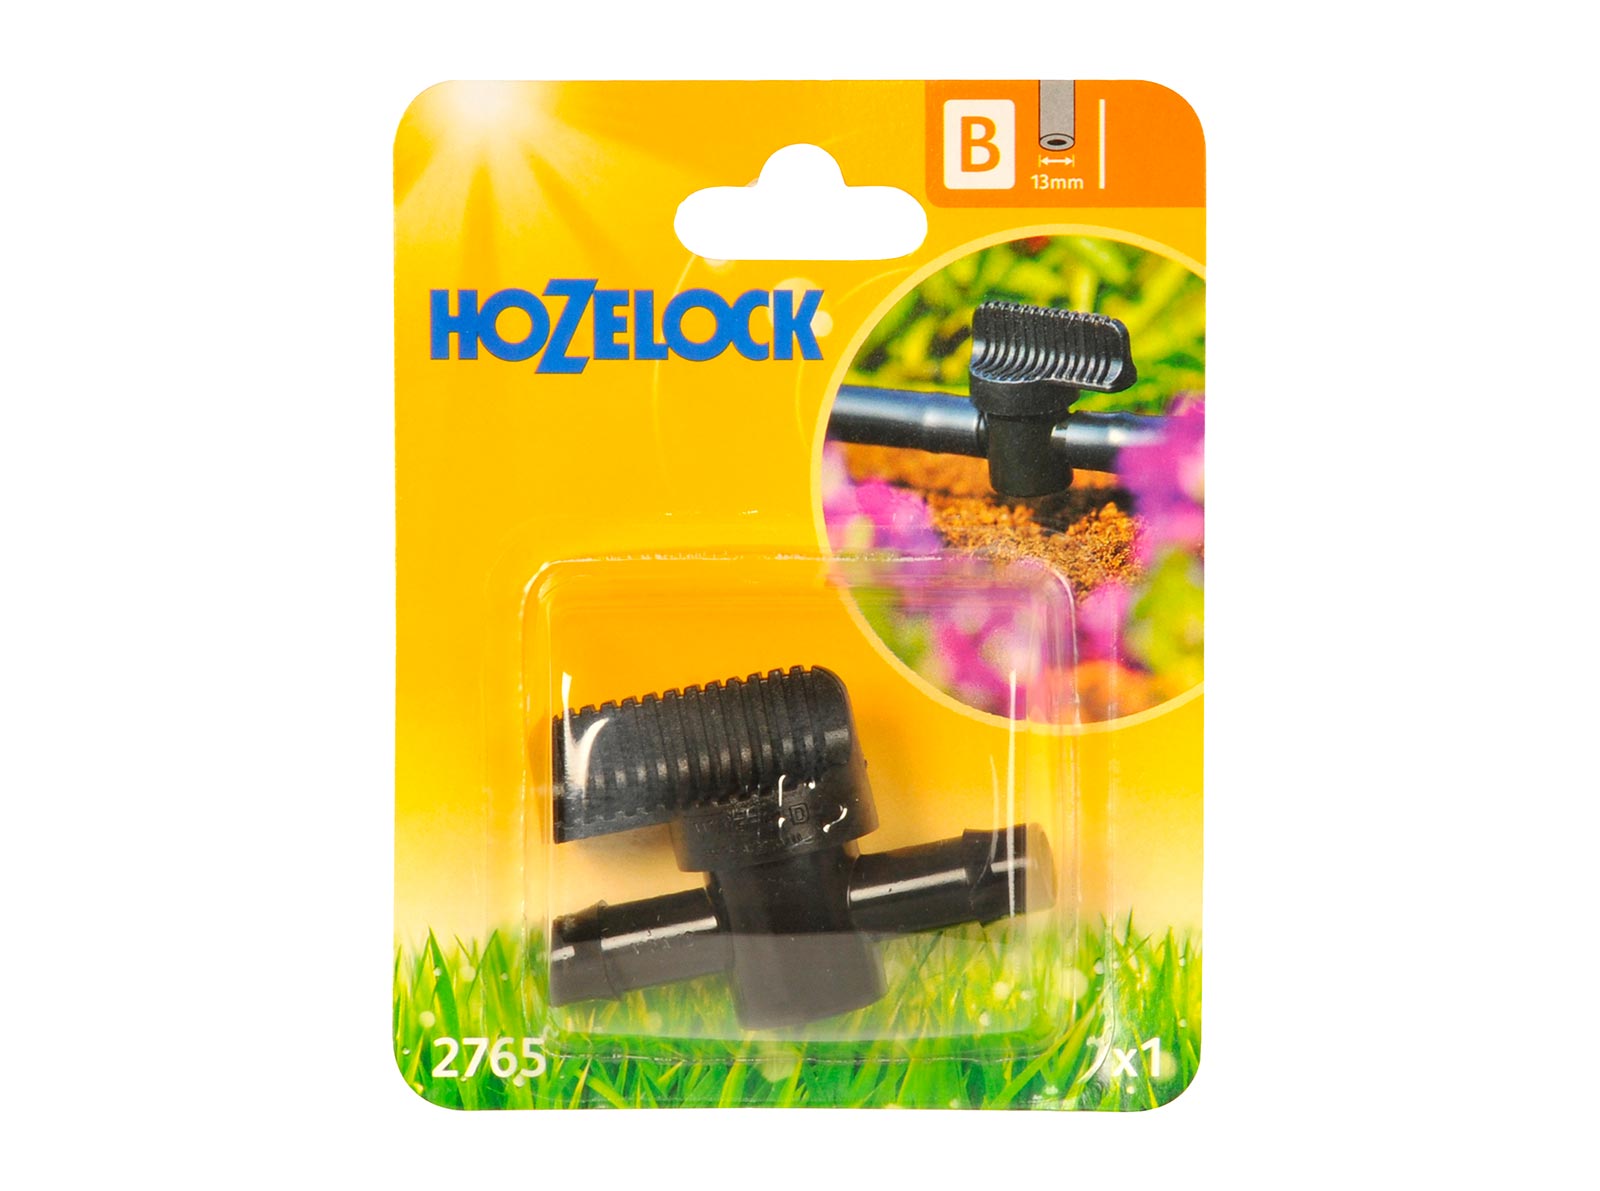 Hozelock Flow Control Valve 13mm from Keen Gardener